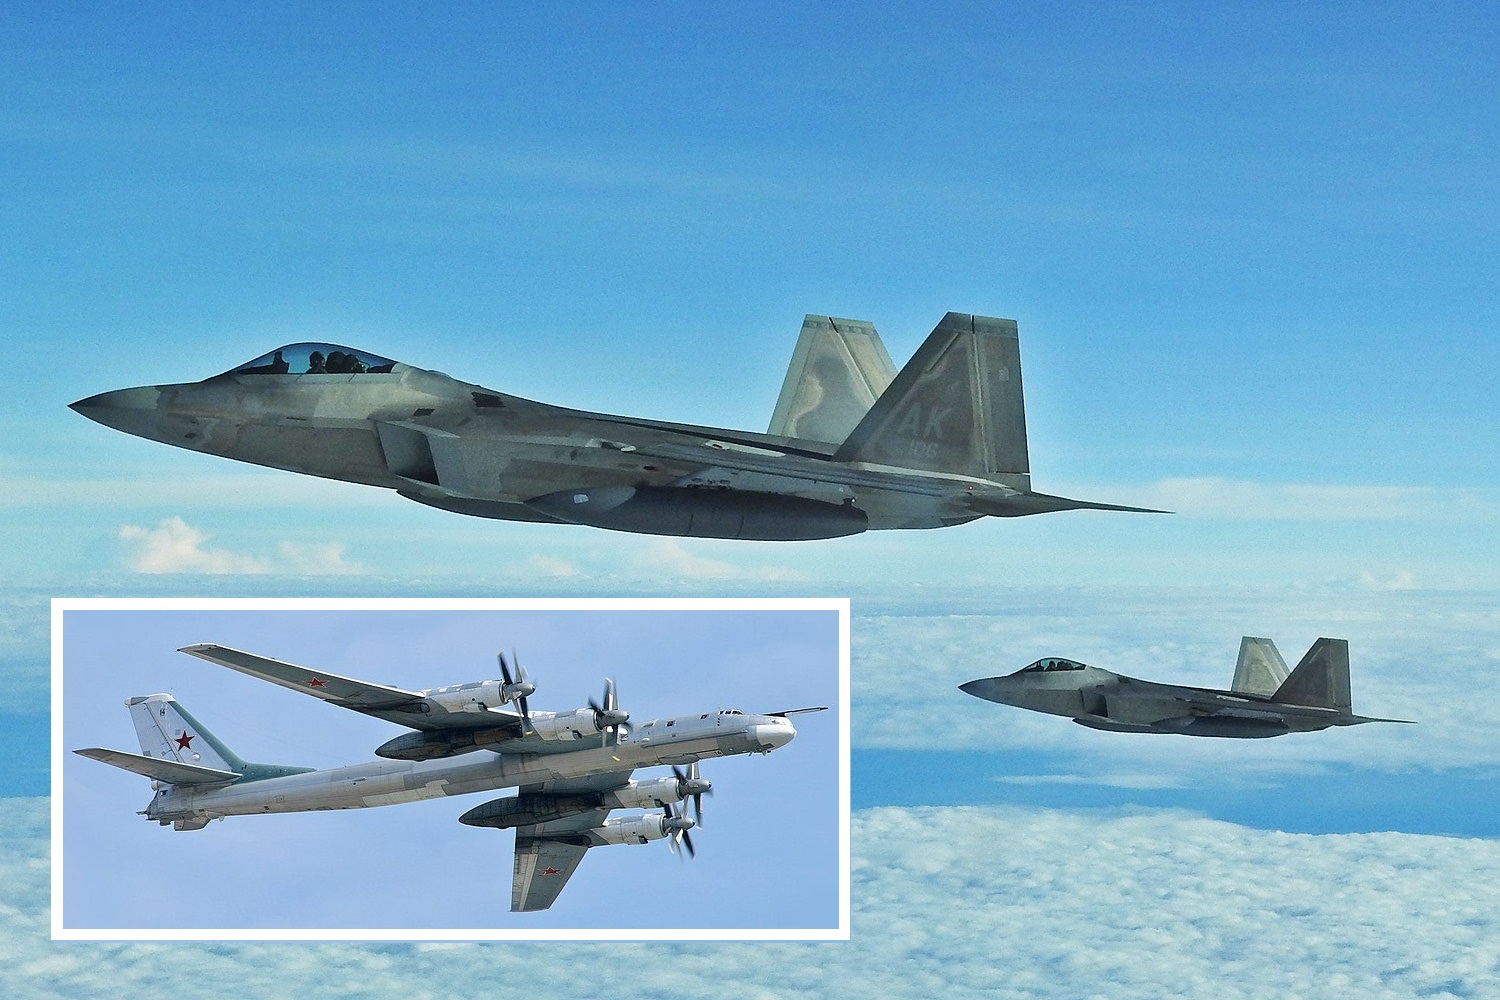 Des chasseurs F-22 de cinquième génération interceptent deux bombardiers nucléaires russes Tu-95 près de l'Alaska